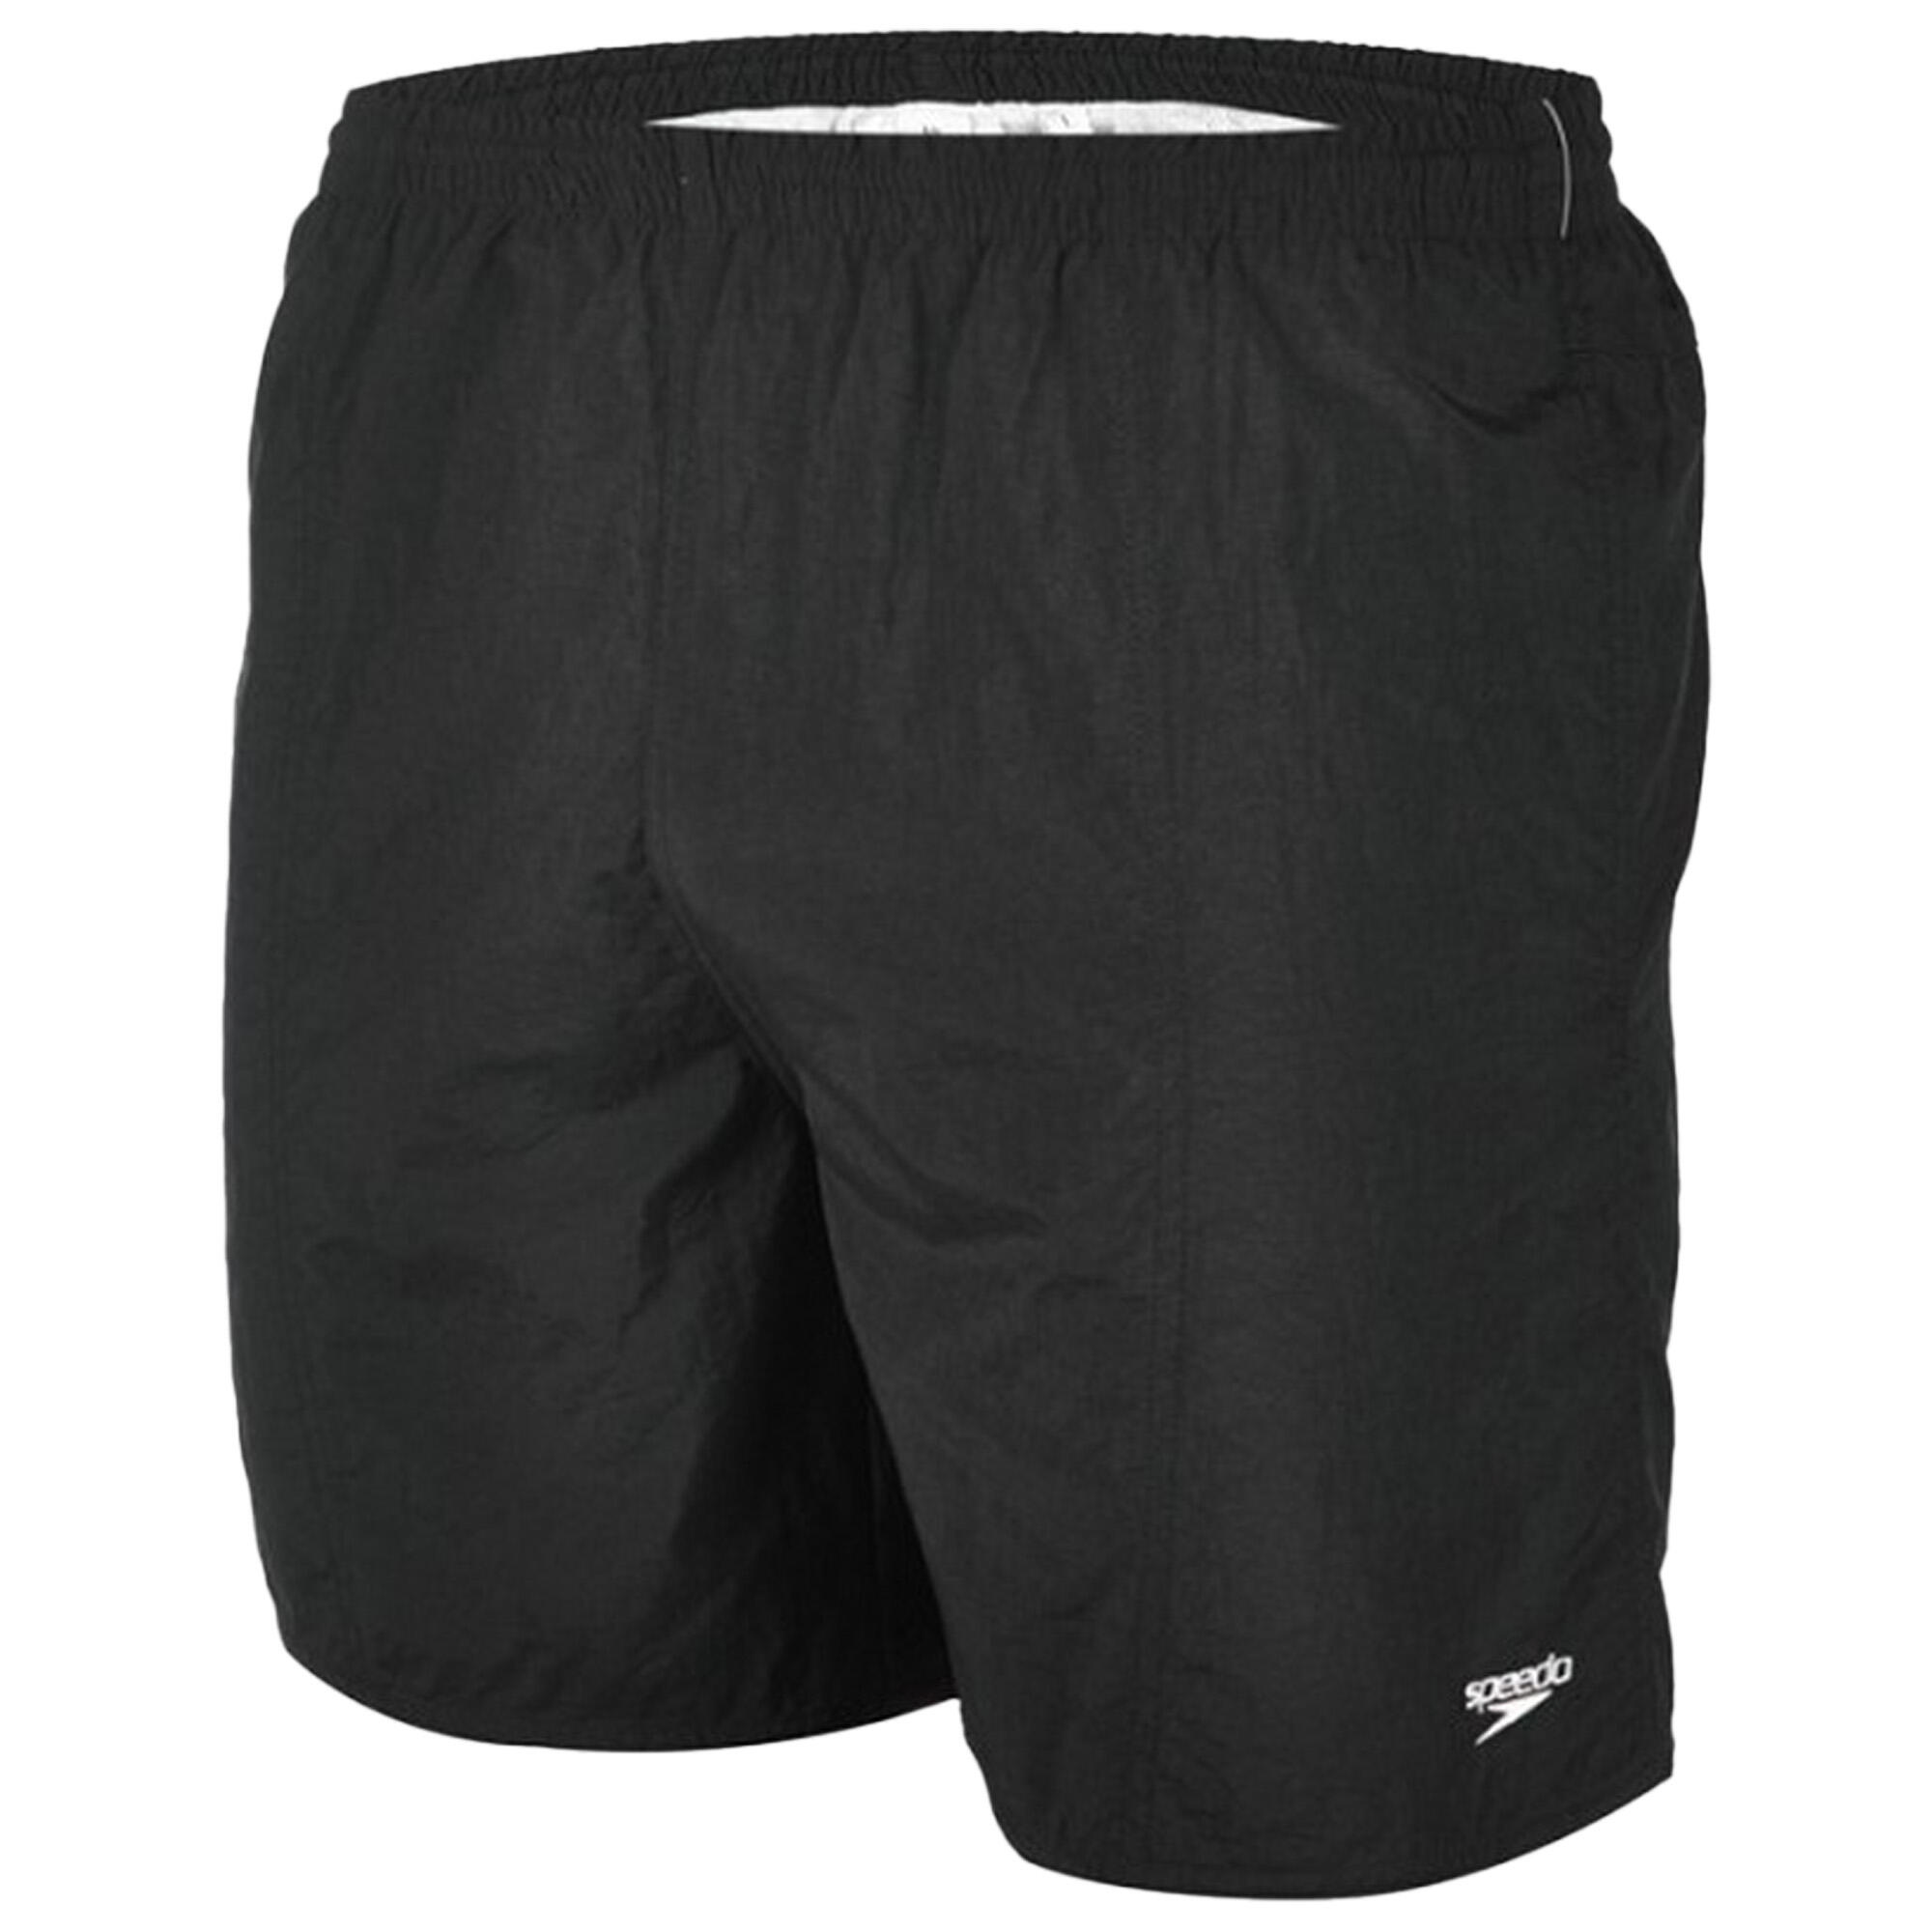 SPEEDO Mens Essential 16 Swim Shorts (Black)